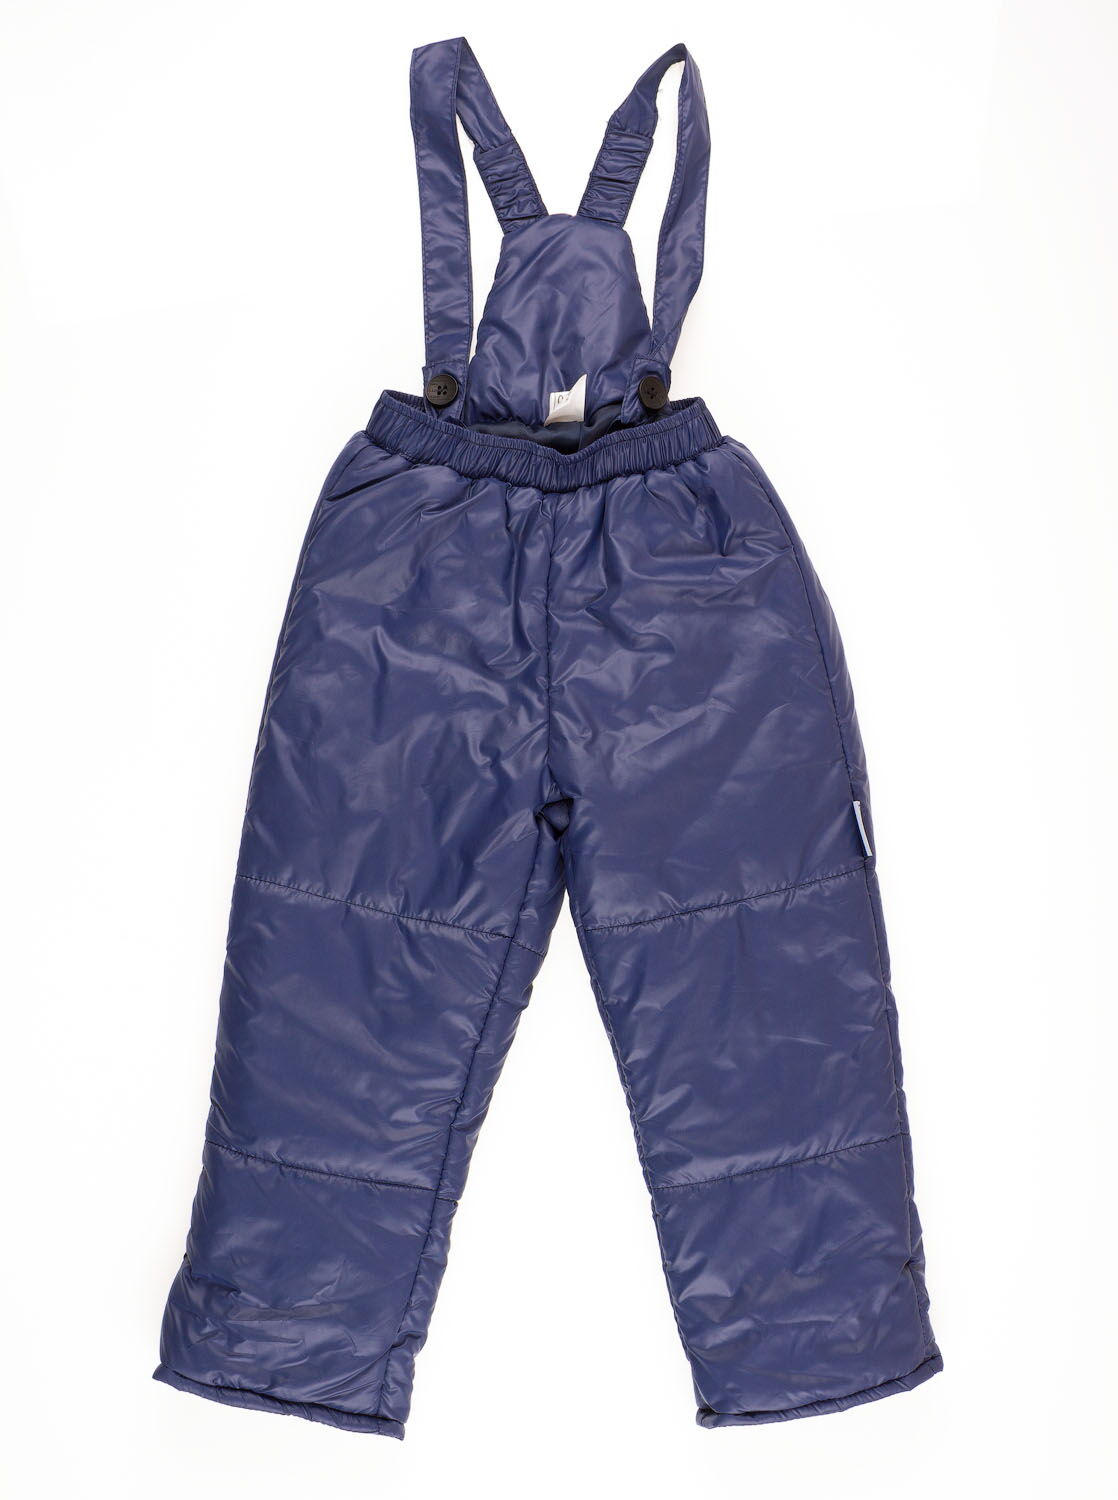 Комбинезон раздельный для девочки (куртка+штаны) ОДЯГАЙКО Цветы темно-синий 22110/01230 - размеры